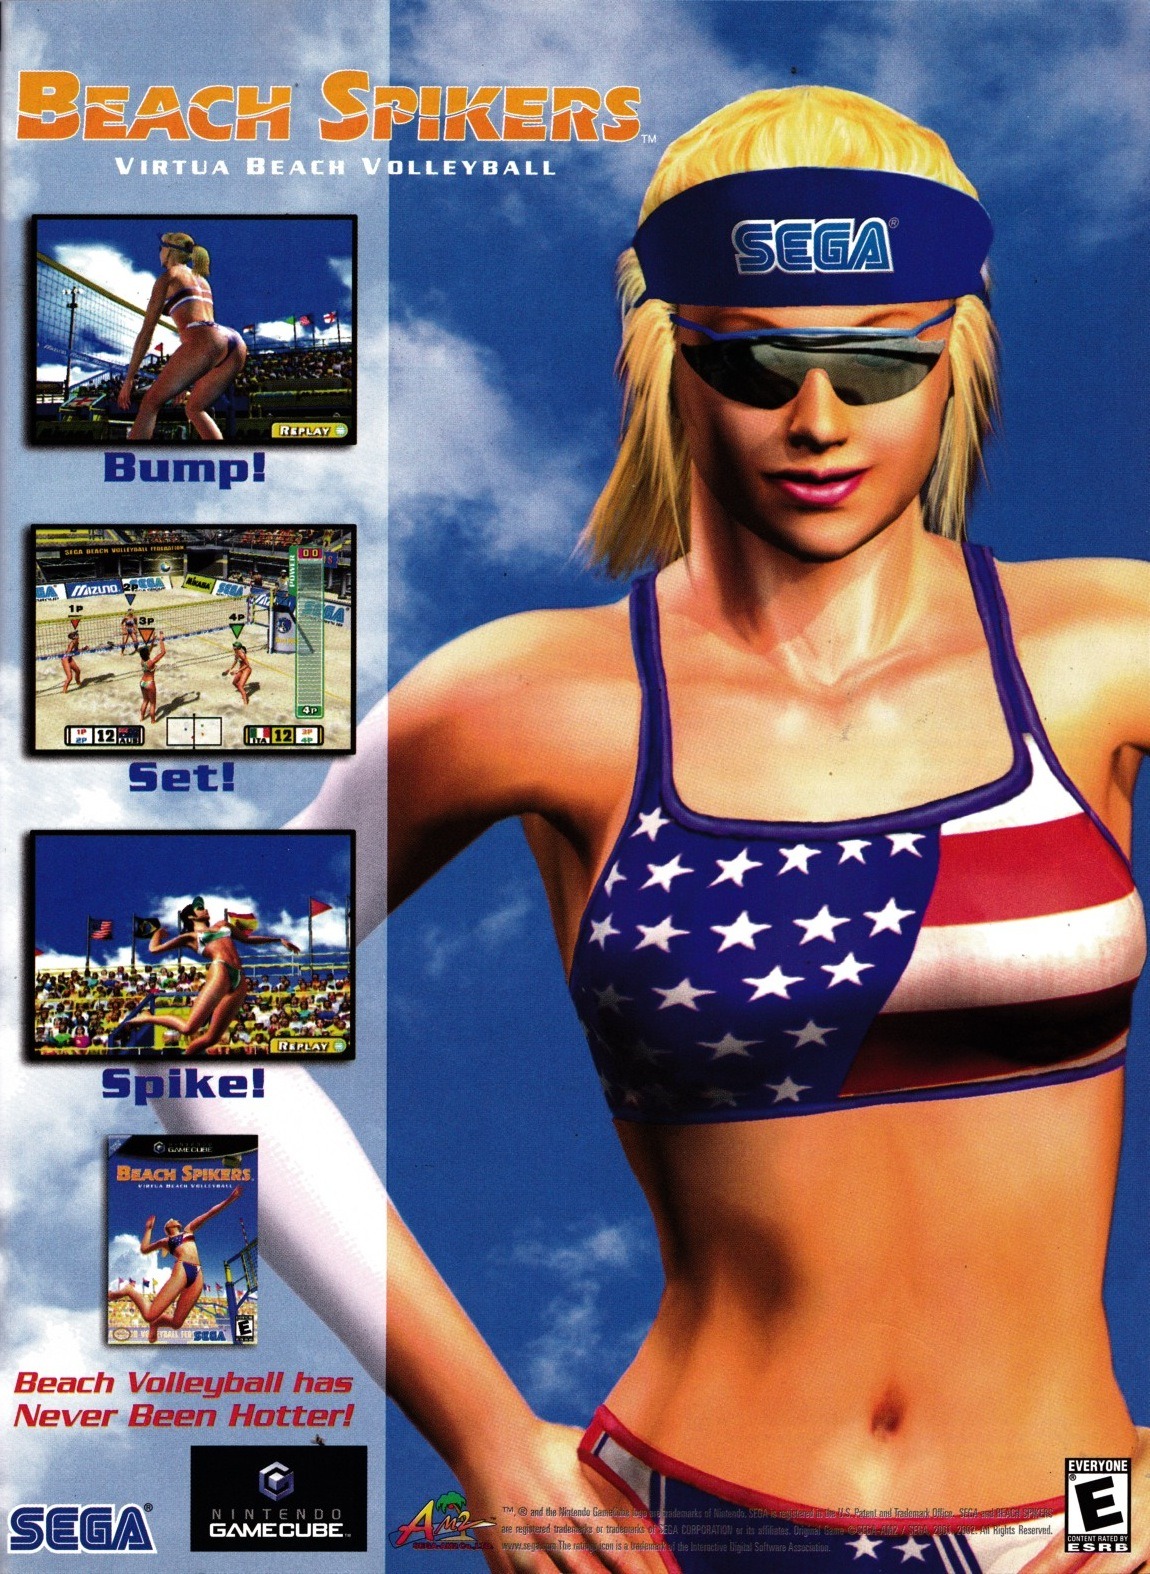 “Beach Spikers”
• GamePro, October 2002 (#169)